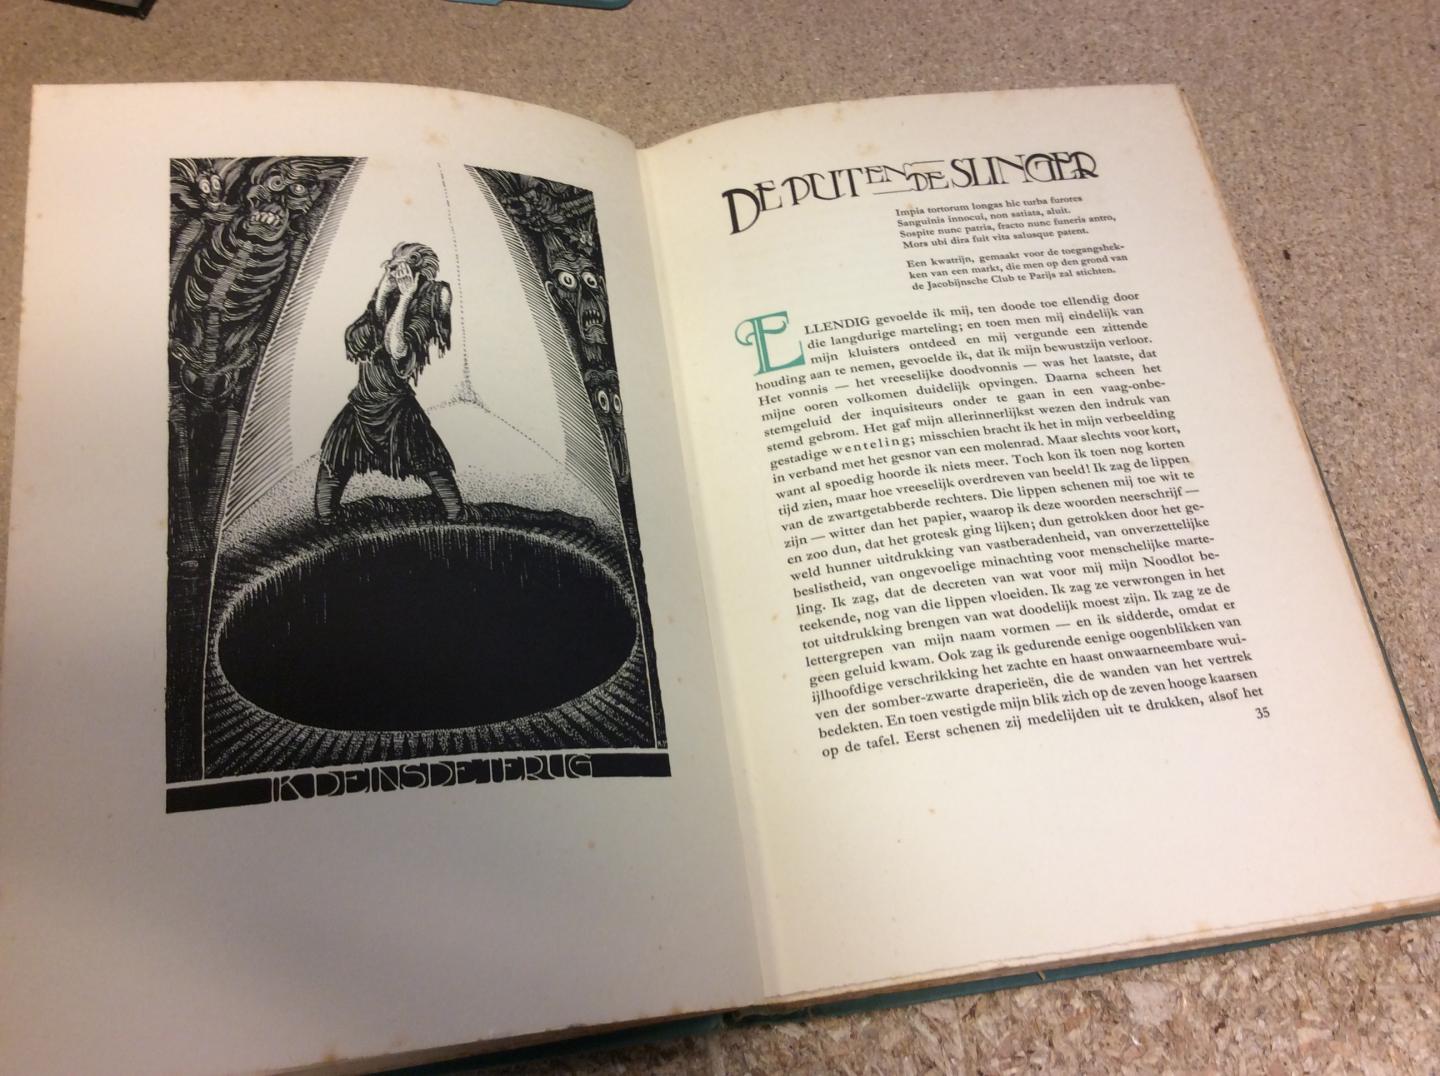 Poe, Edgar Allan | Illustraties/platen: Albert Hahn jr. - Fantastische vertellingen